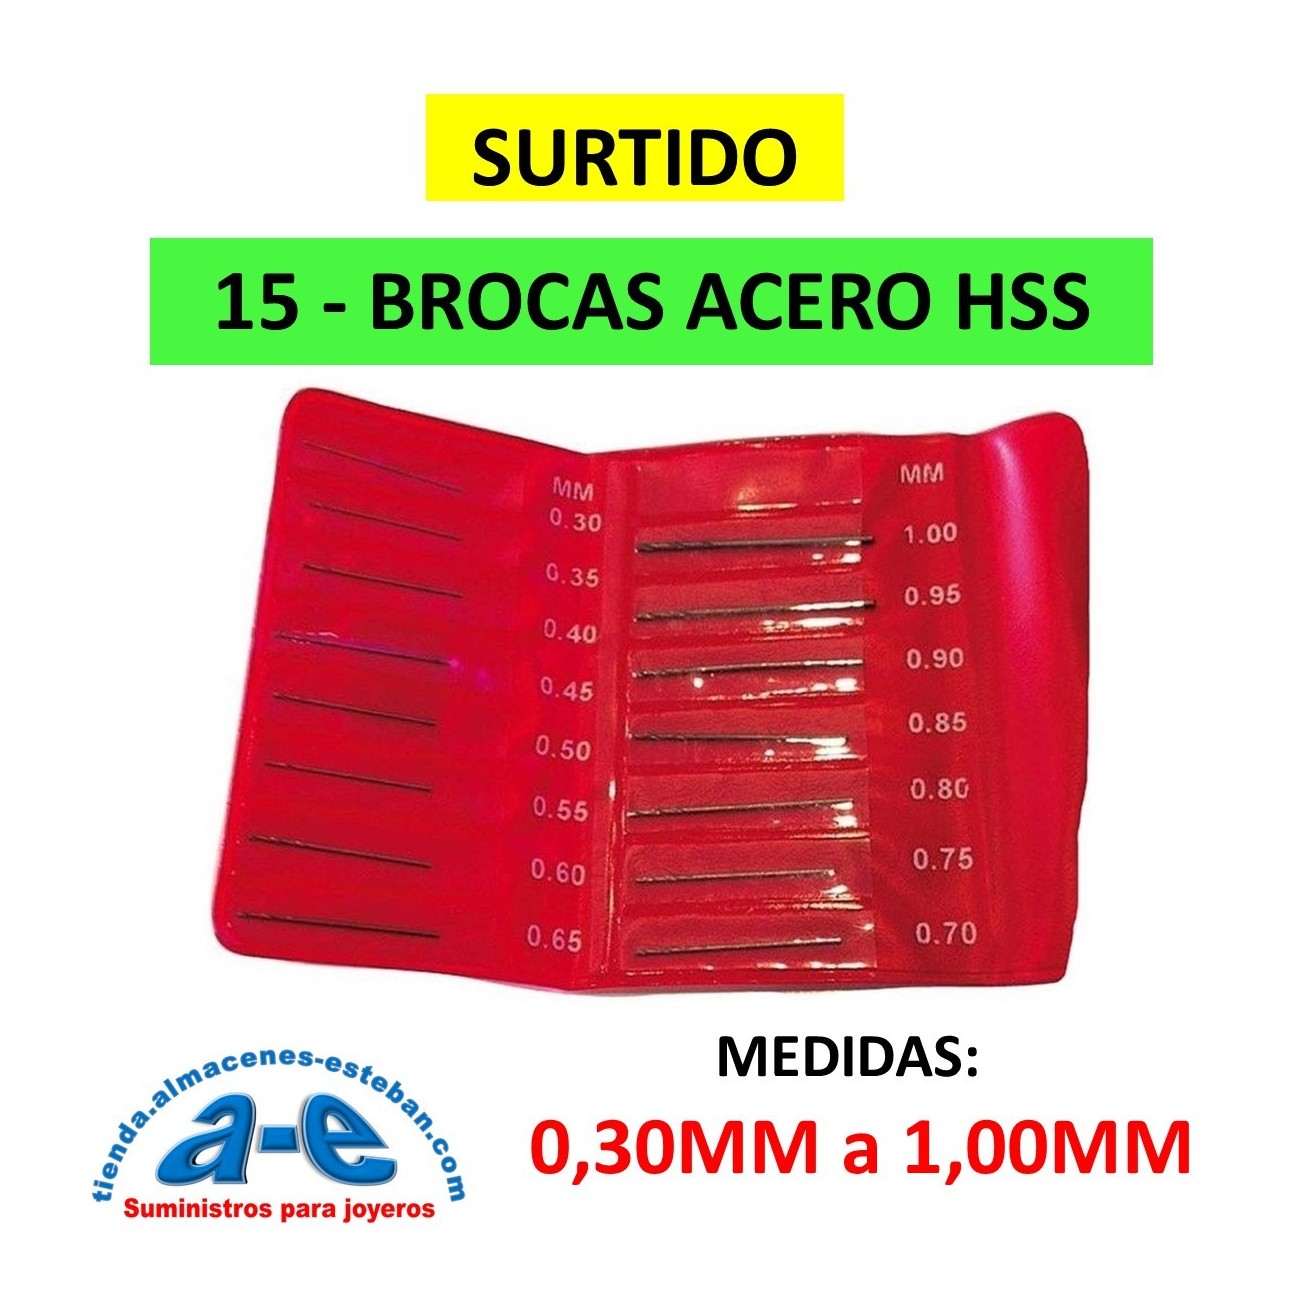 SURTIDO 15 BROCAS 0,30-1,00MM HSS